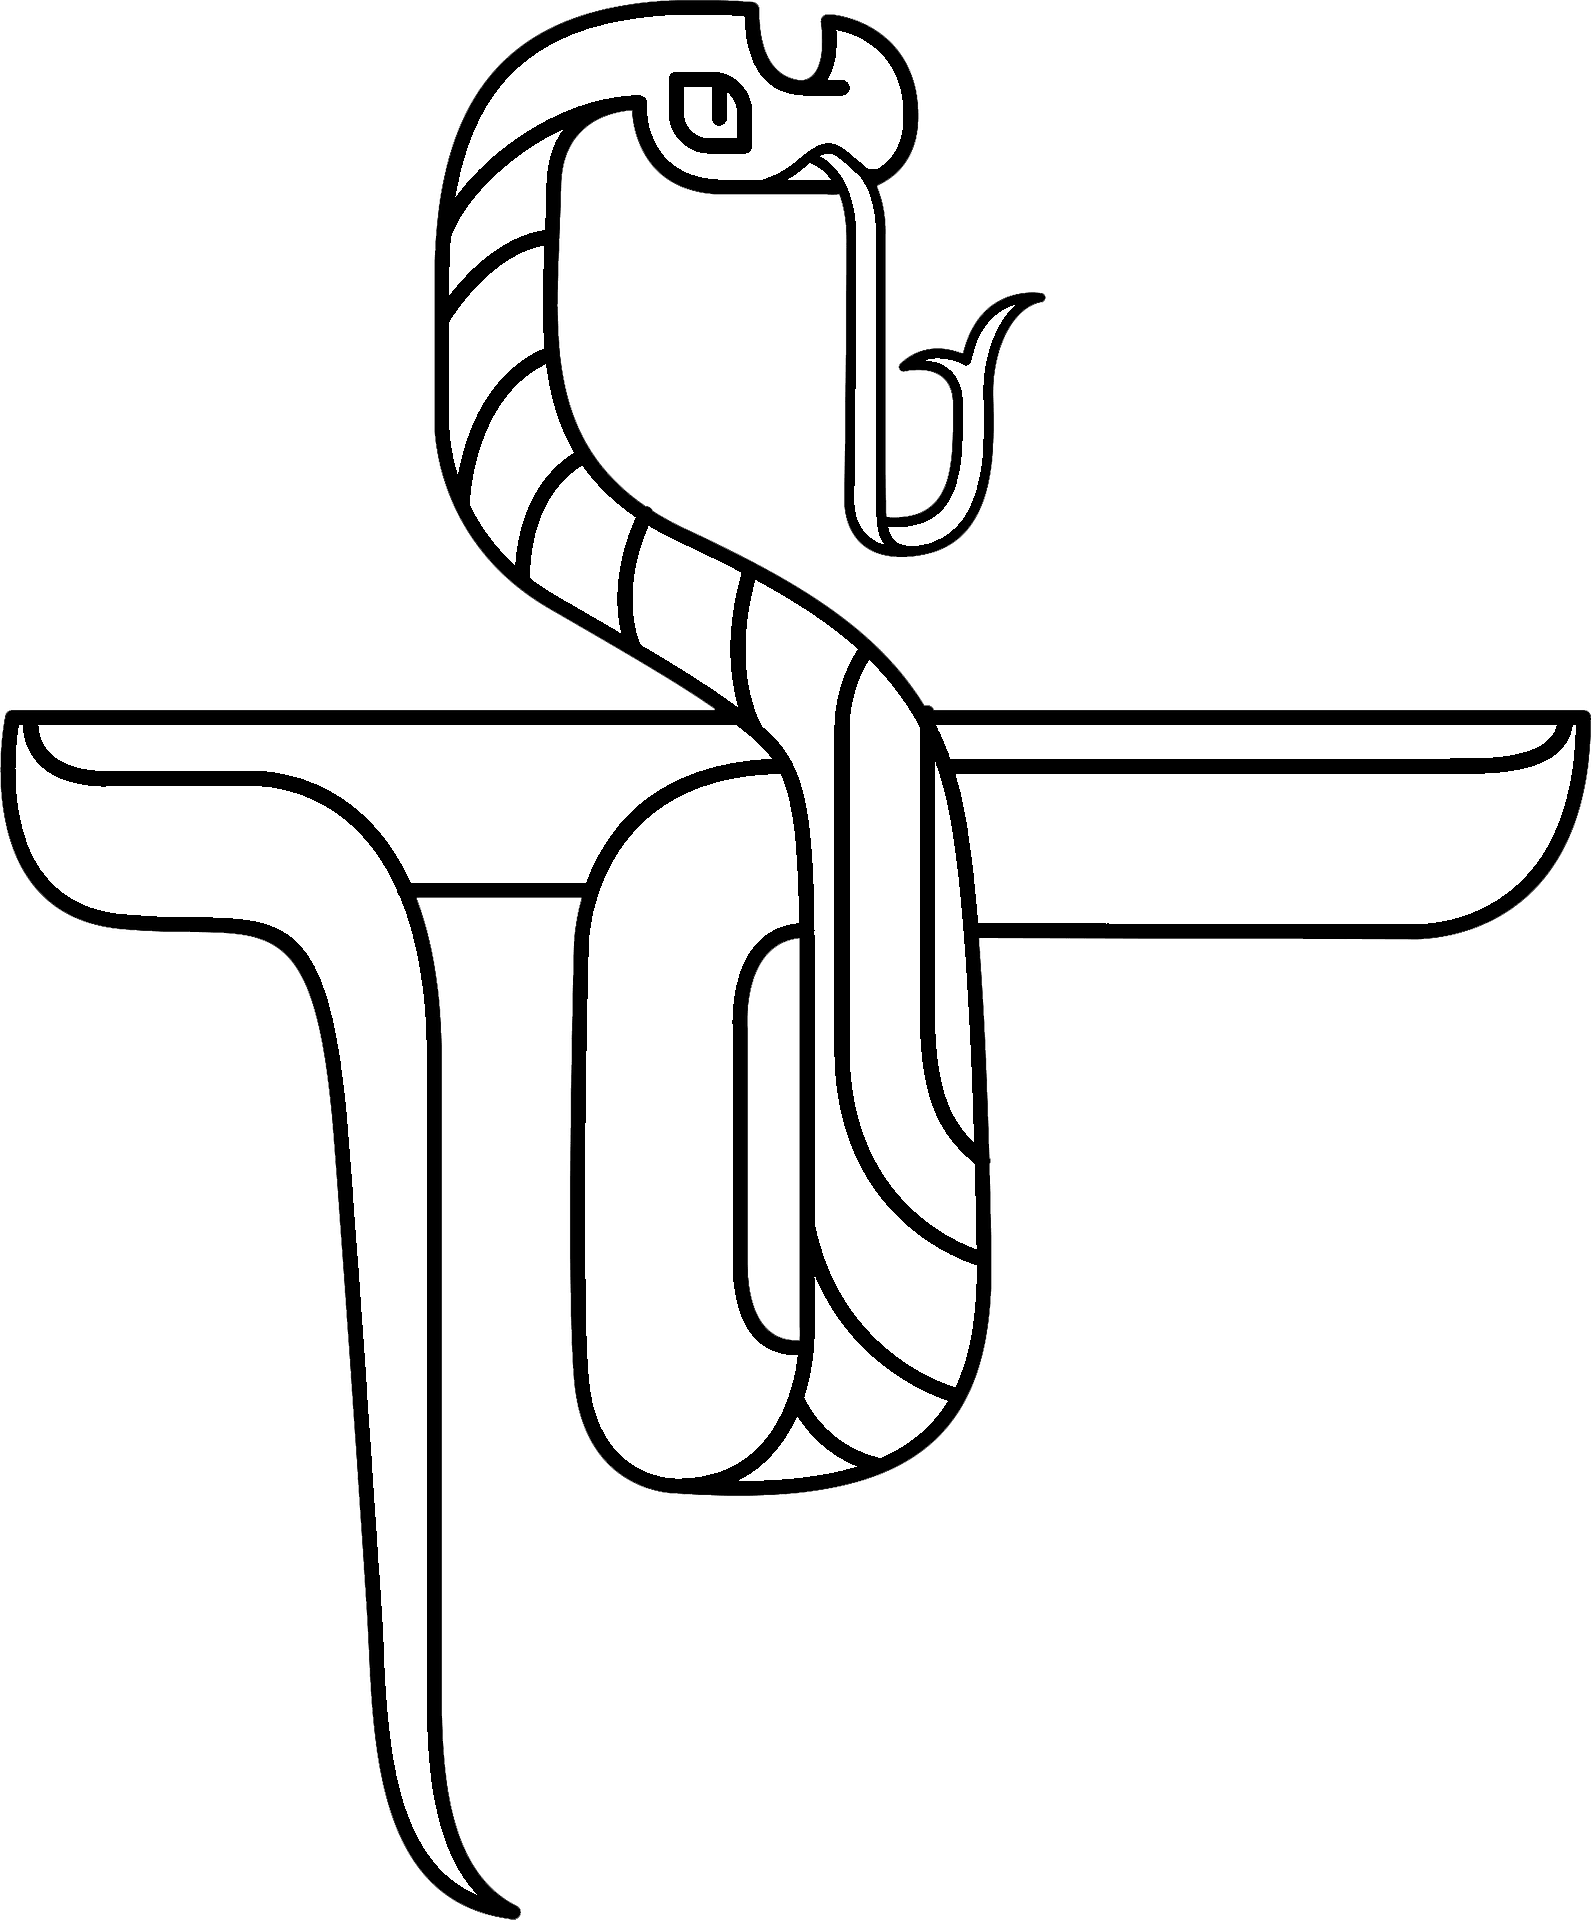 dòng nghệ thuật clip nghệ thuật tô màu cuốn sách đen trắng  con rắn png  tải về  Miễn phí trong suốt Dòng Nghệ Thuật png Tải về